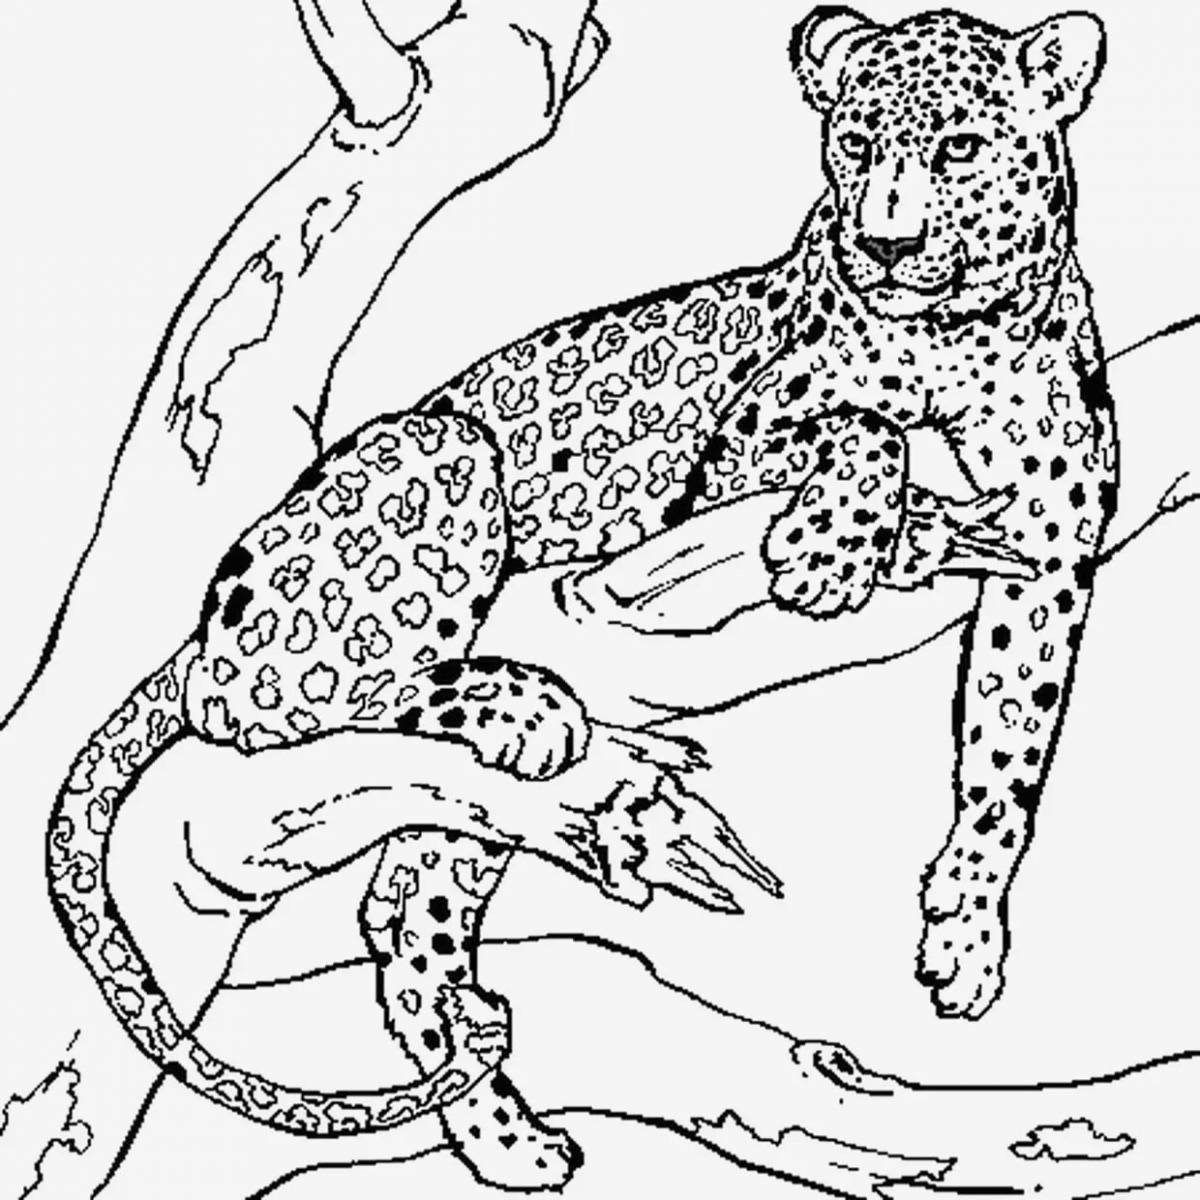 Great jaguar animal coloring book